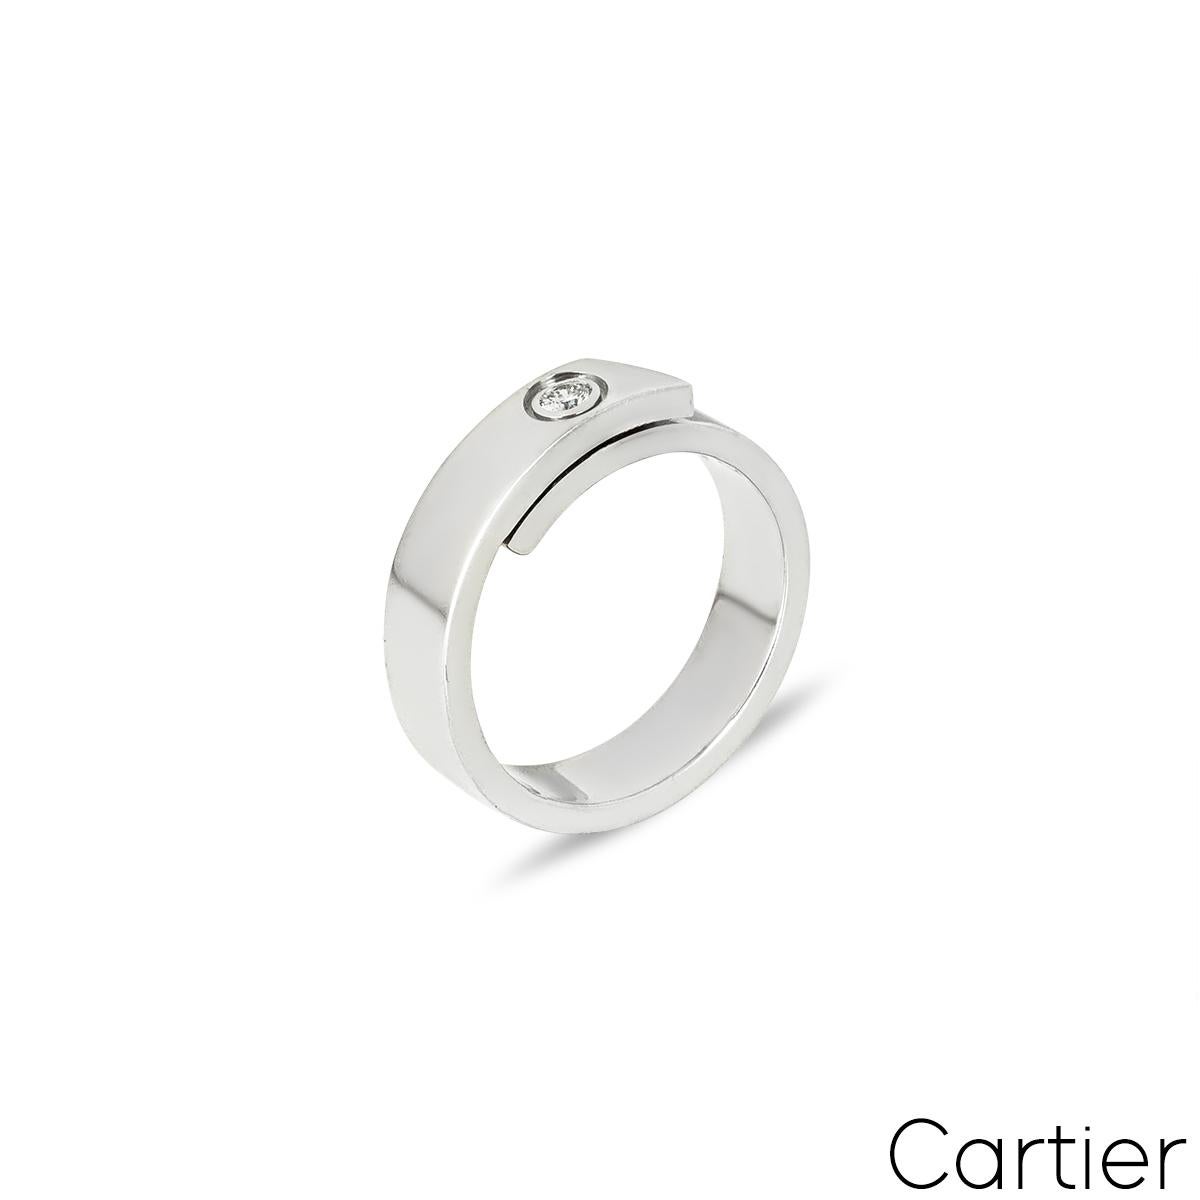 Ein schöner Diamantring aus 18 Karat Weißgold von Cartier aus der Anniversary Collection. Der Ring besteht aus einem 5,5 mm breiten Band, das sich in der Mitte mit einem einzelnen runden Diamanten im Brillantschliff (ca. 0,09 ct) in einer